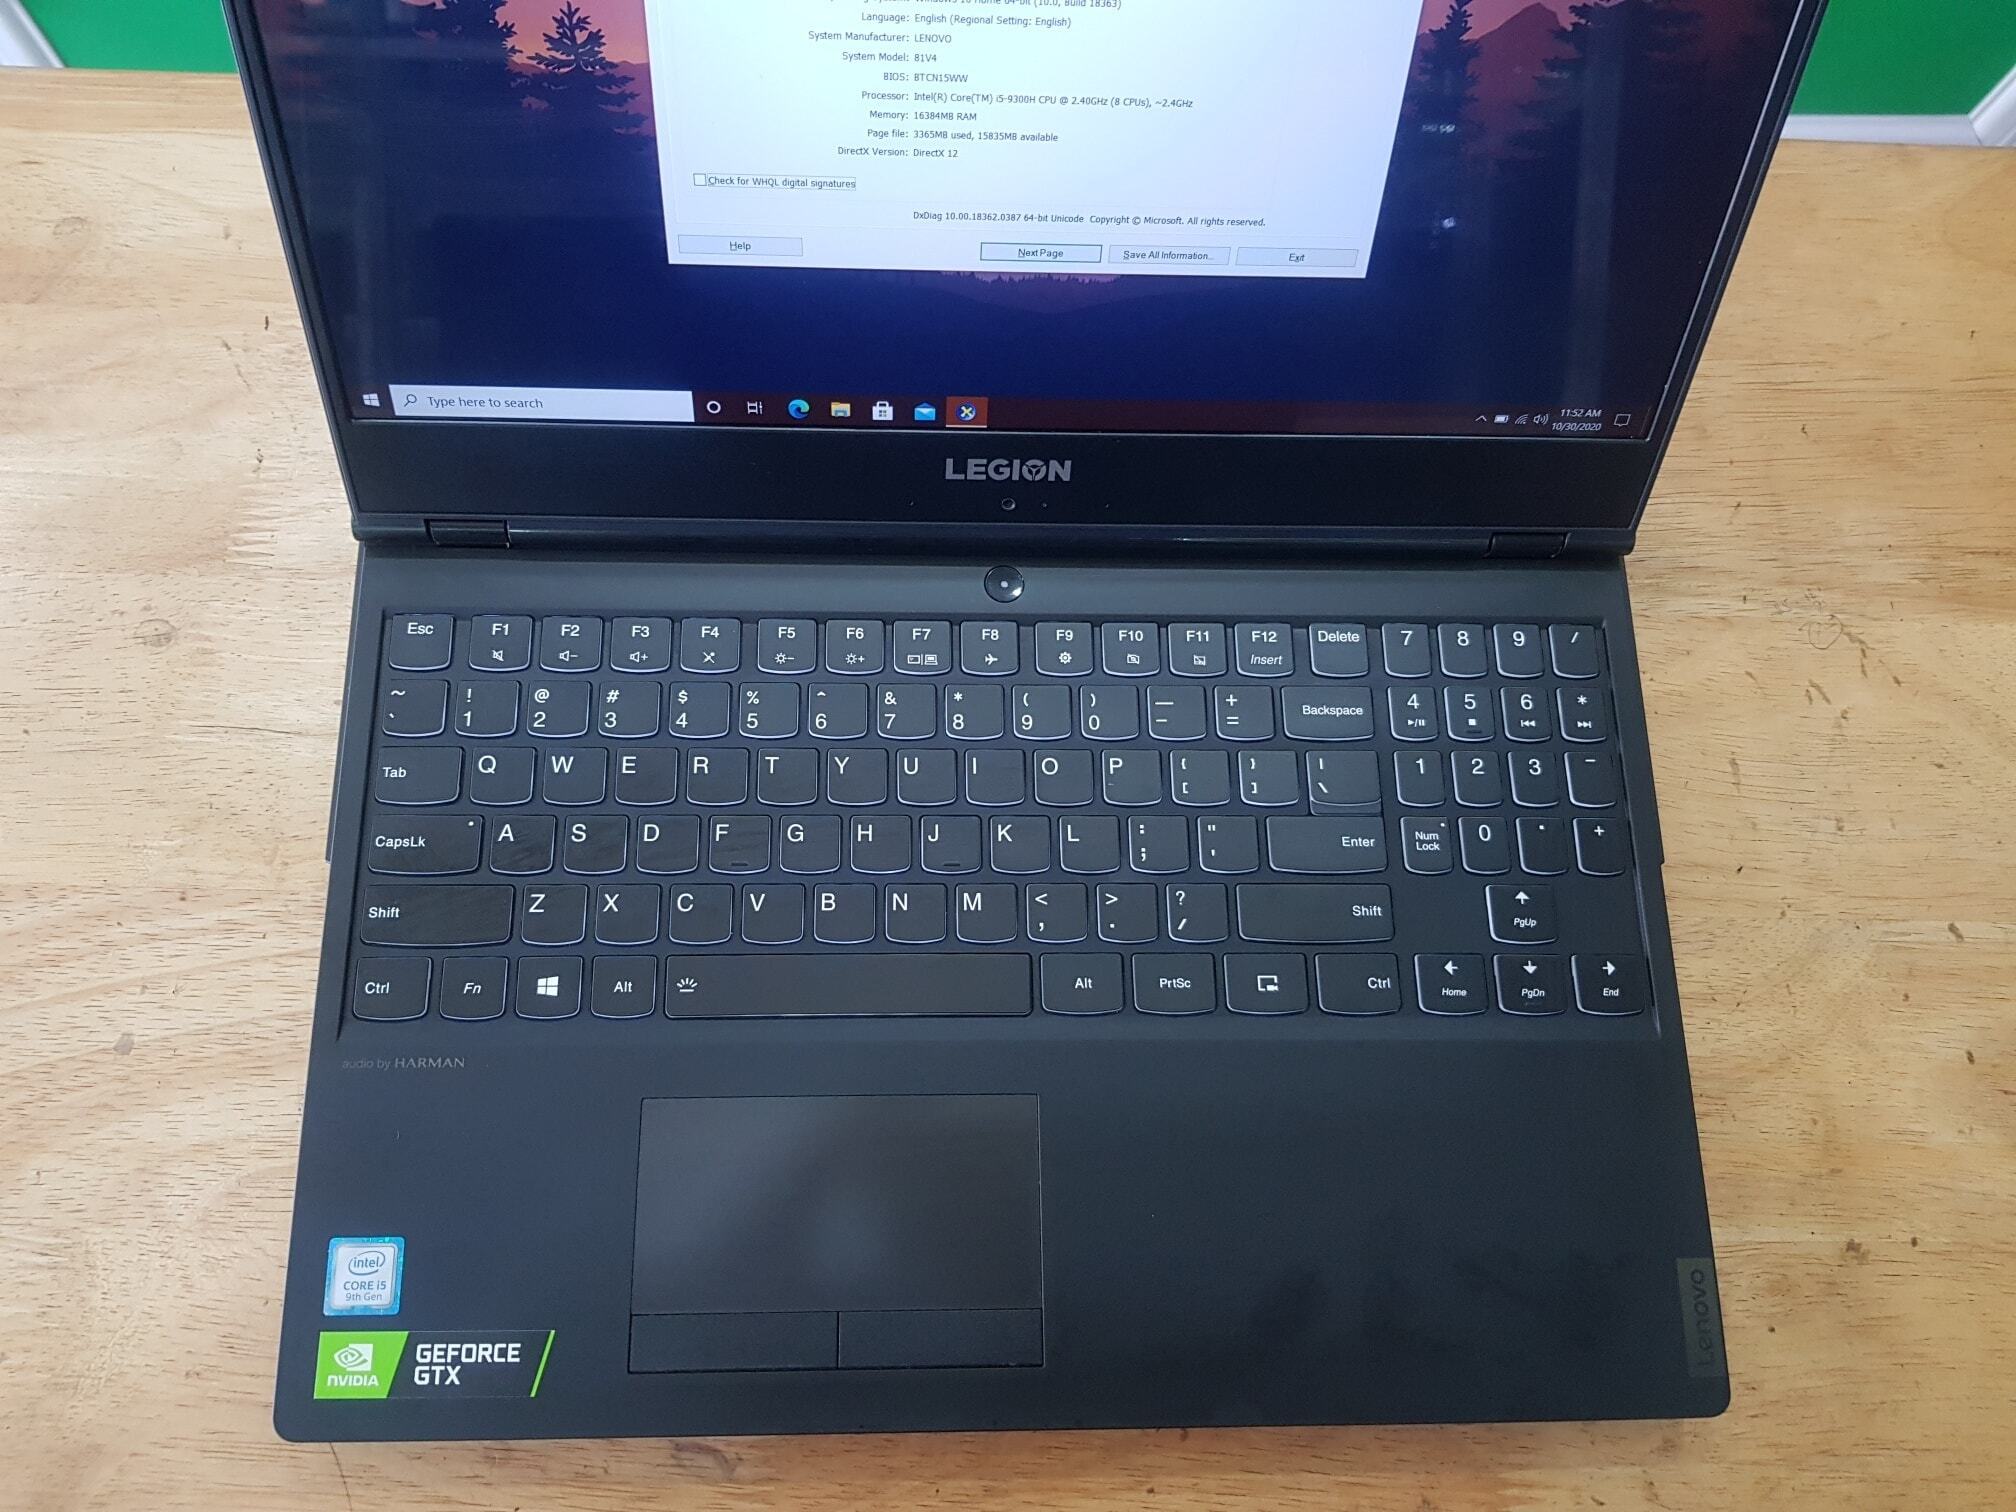 Laptop Lenovo Legion Y7000-15IRH 81V4000AVN - Intel Core i5-9300H, 8GB RAM, HDD 1TB + SSD 256GB, Nvidia GeForce GTX 1050 3GB GDDR5, 15.6 inch